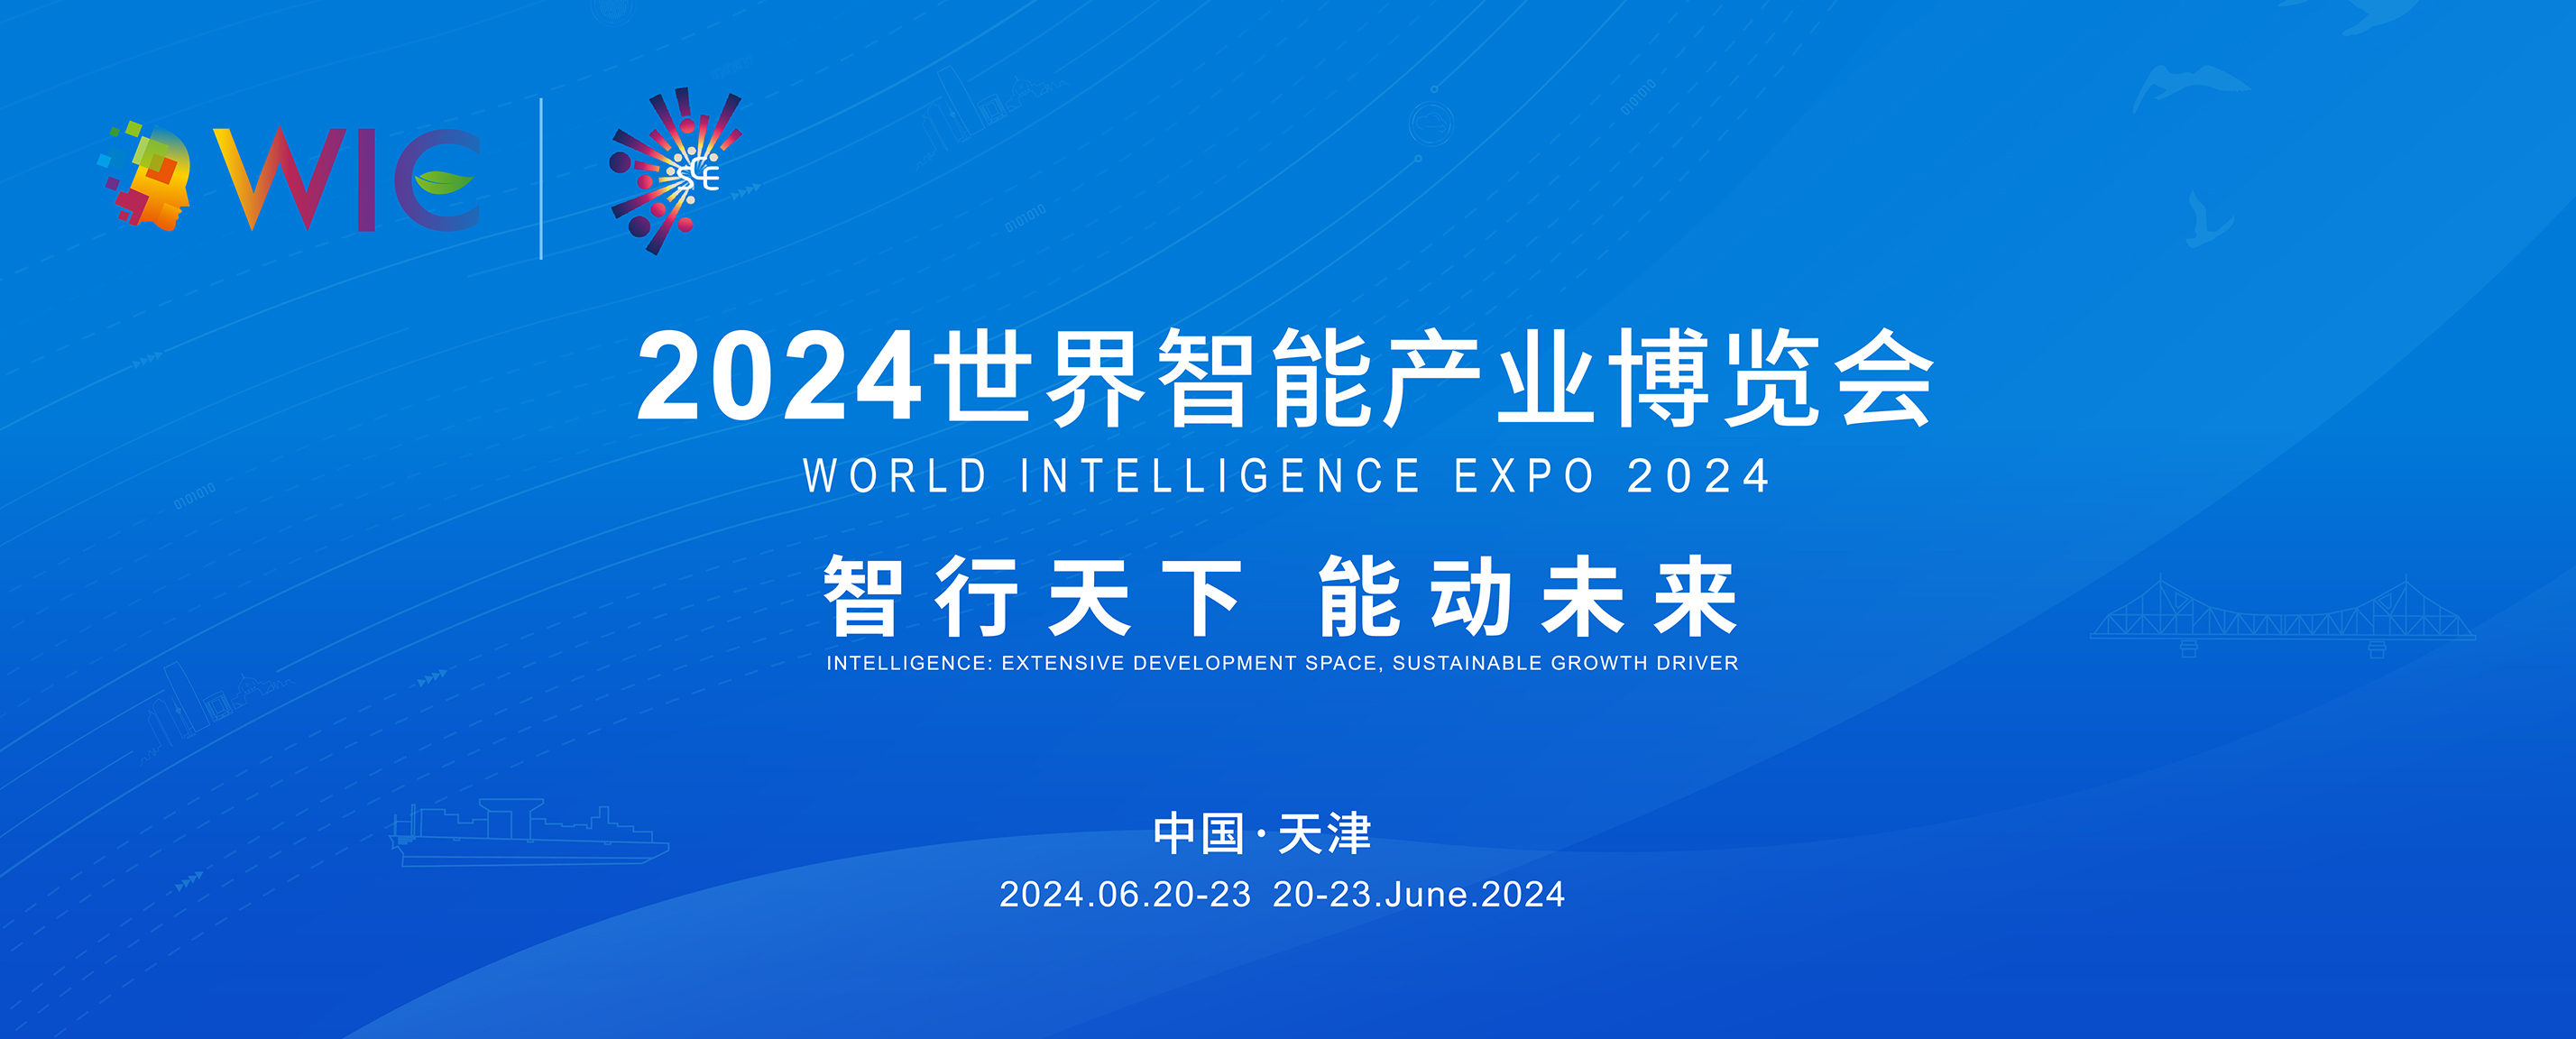 2024天津國際智慧産業博覽會_fororder_2856×1152